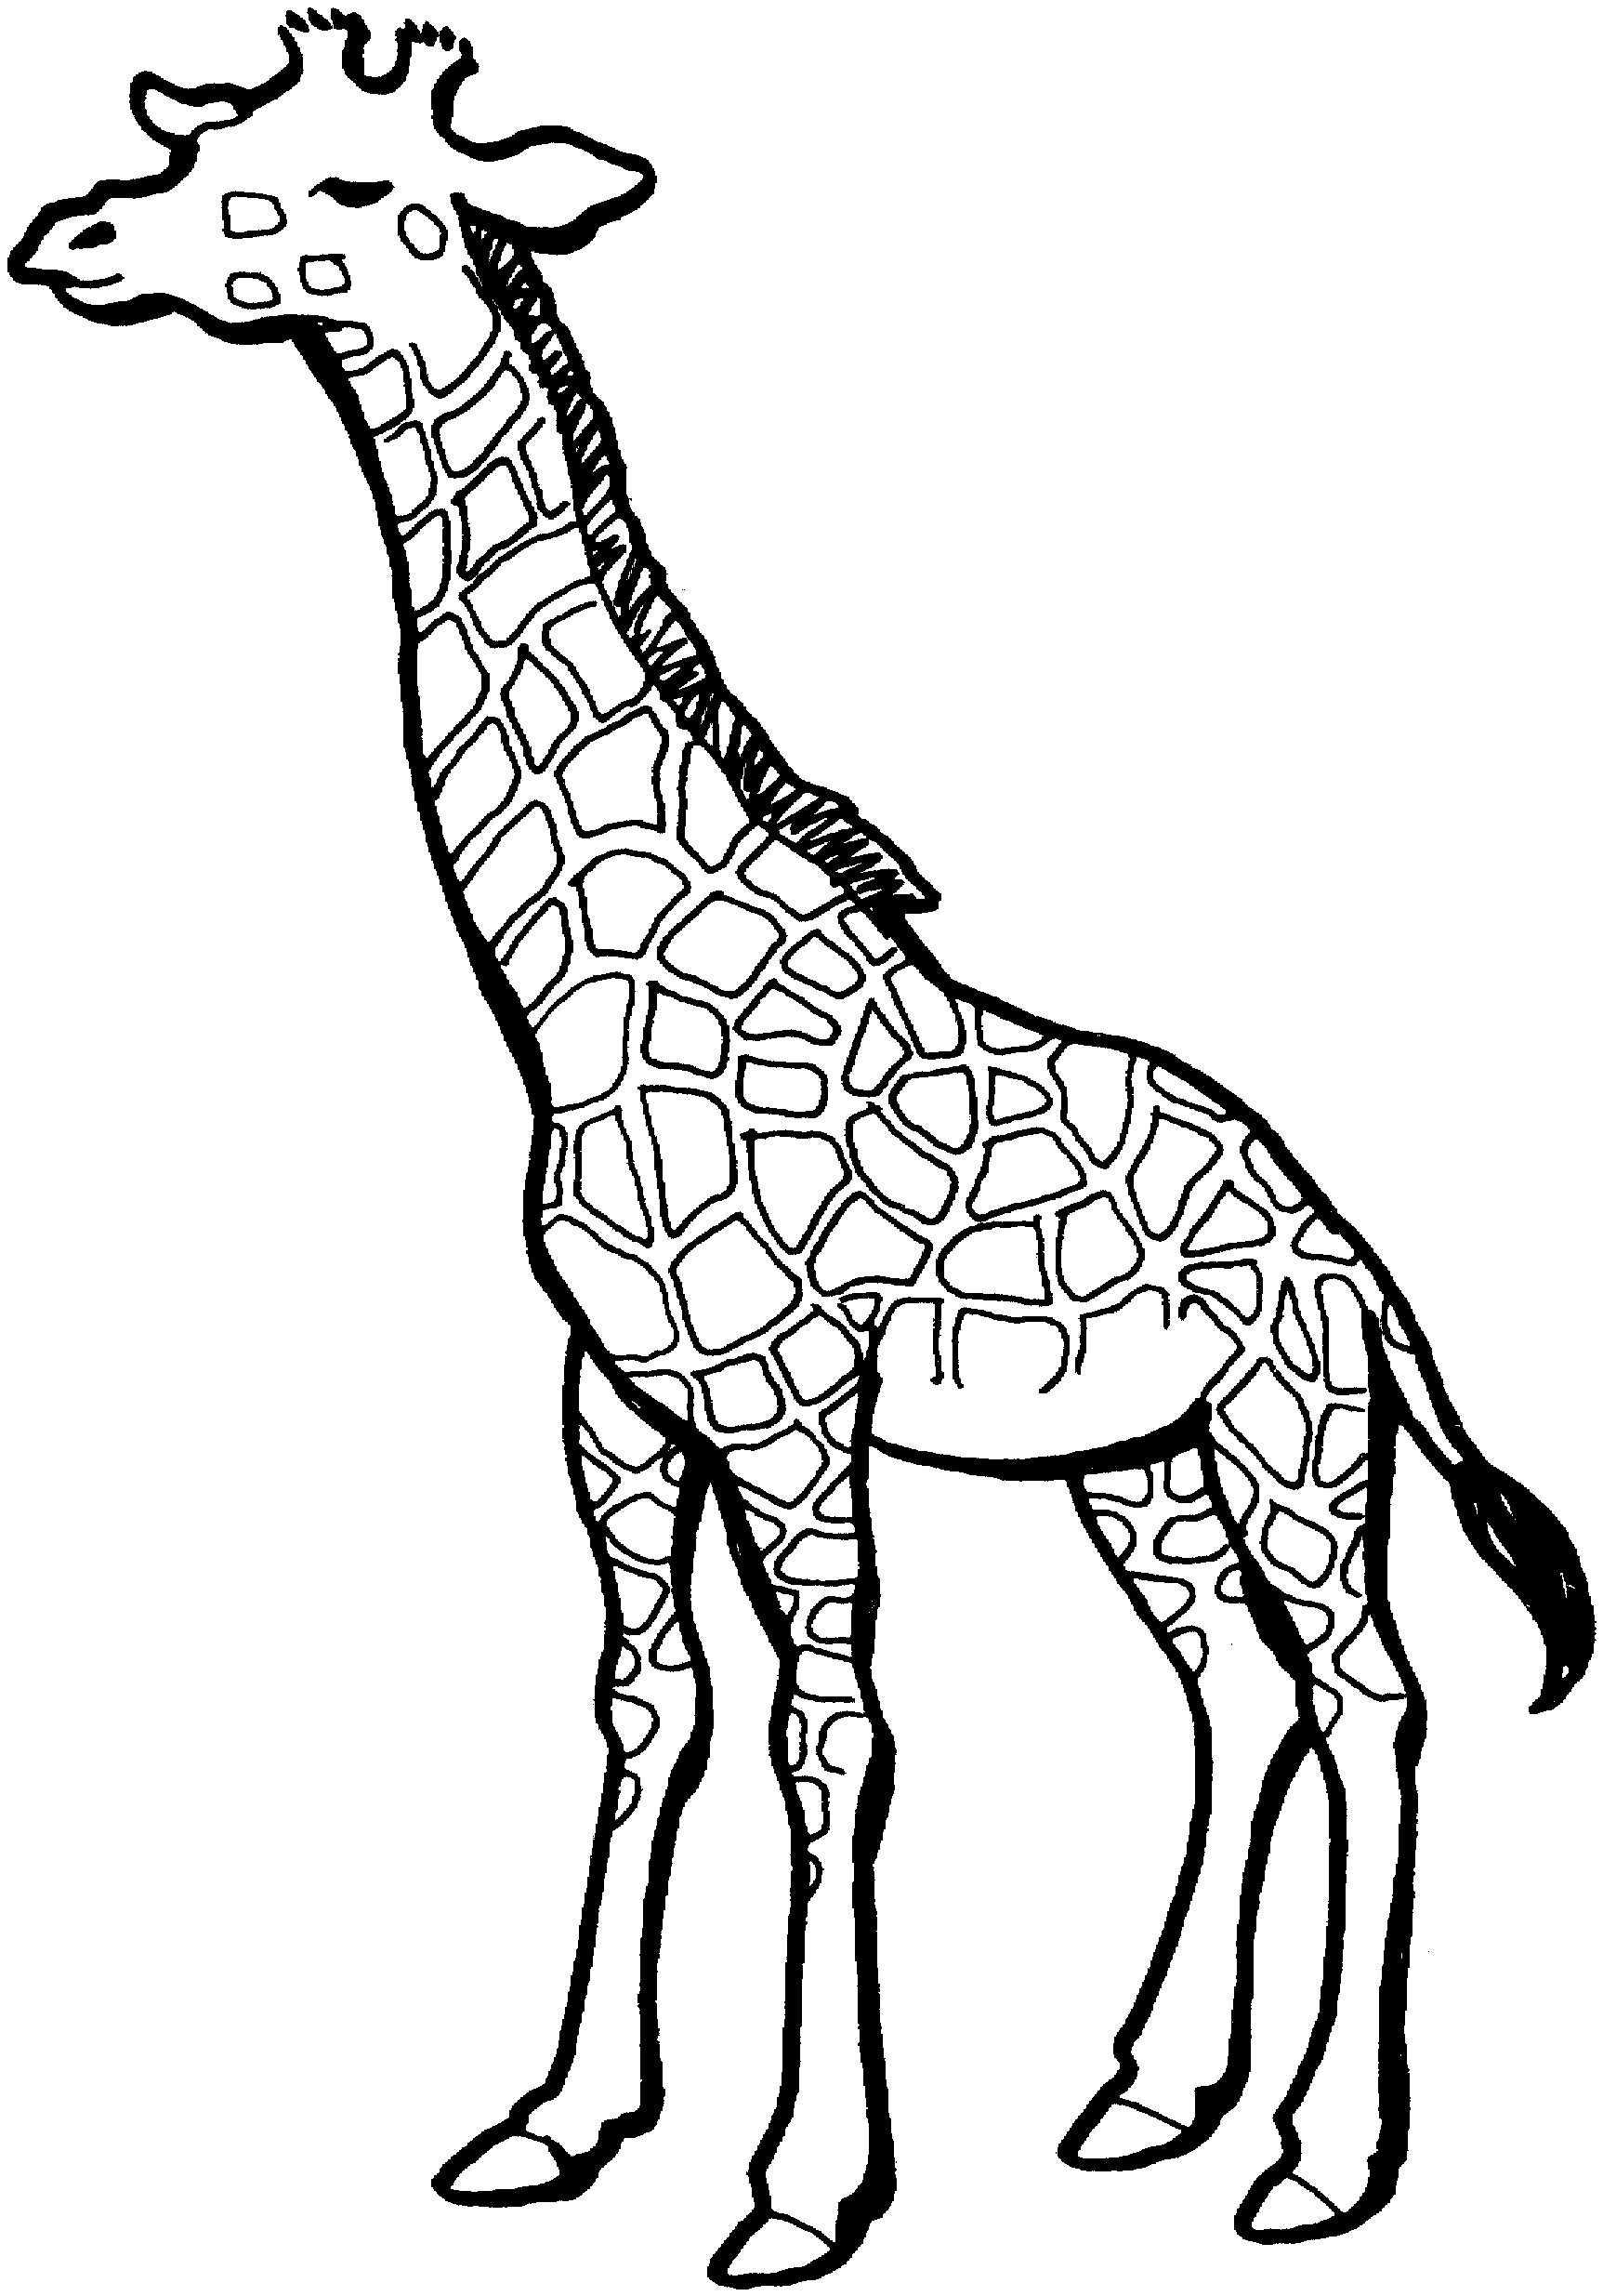 Baby giraffe clipart outline